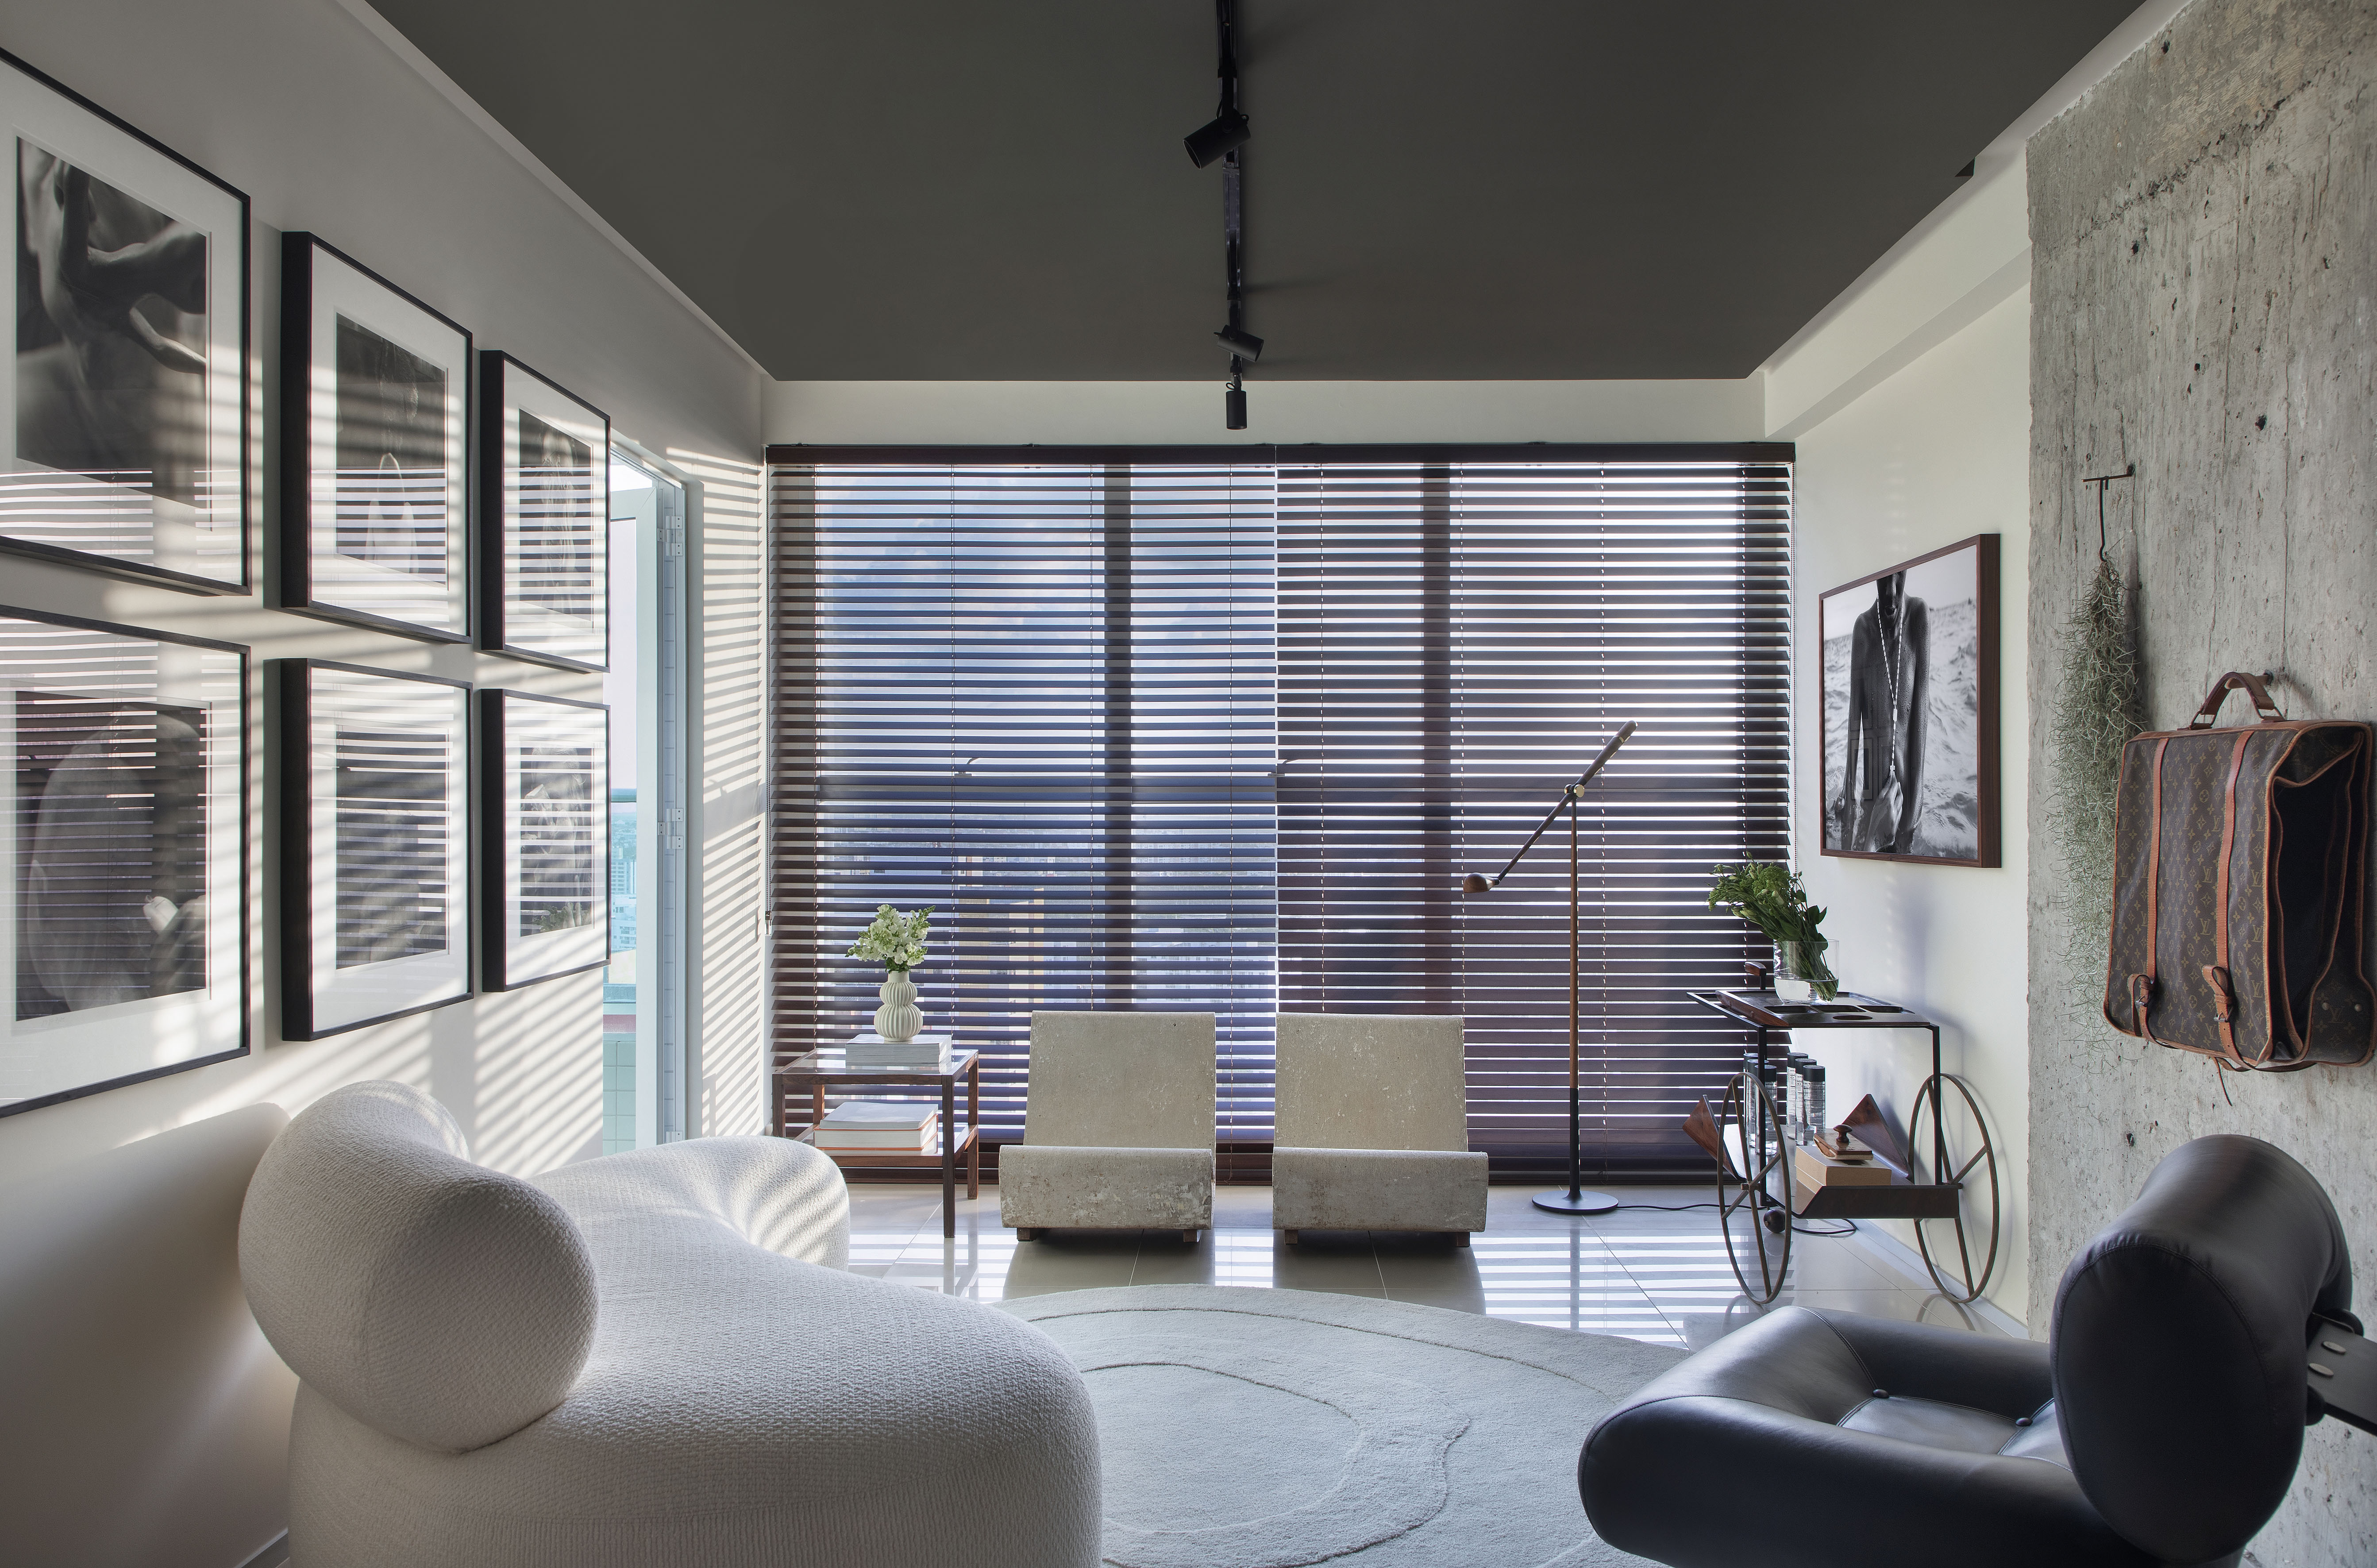 Sala de estar com 25m² é repleta de obras de arte e tons de cinza